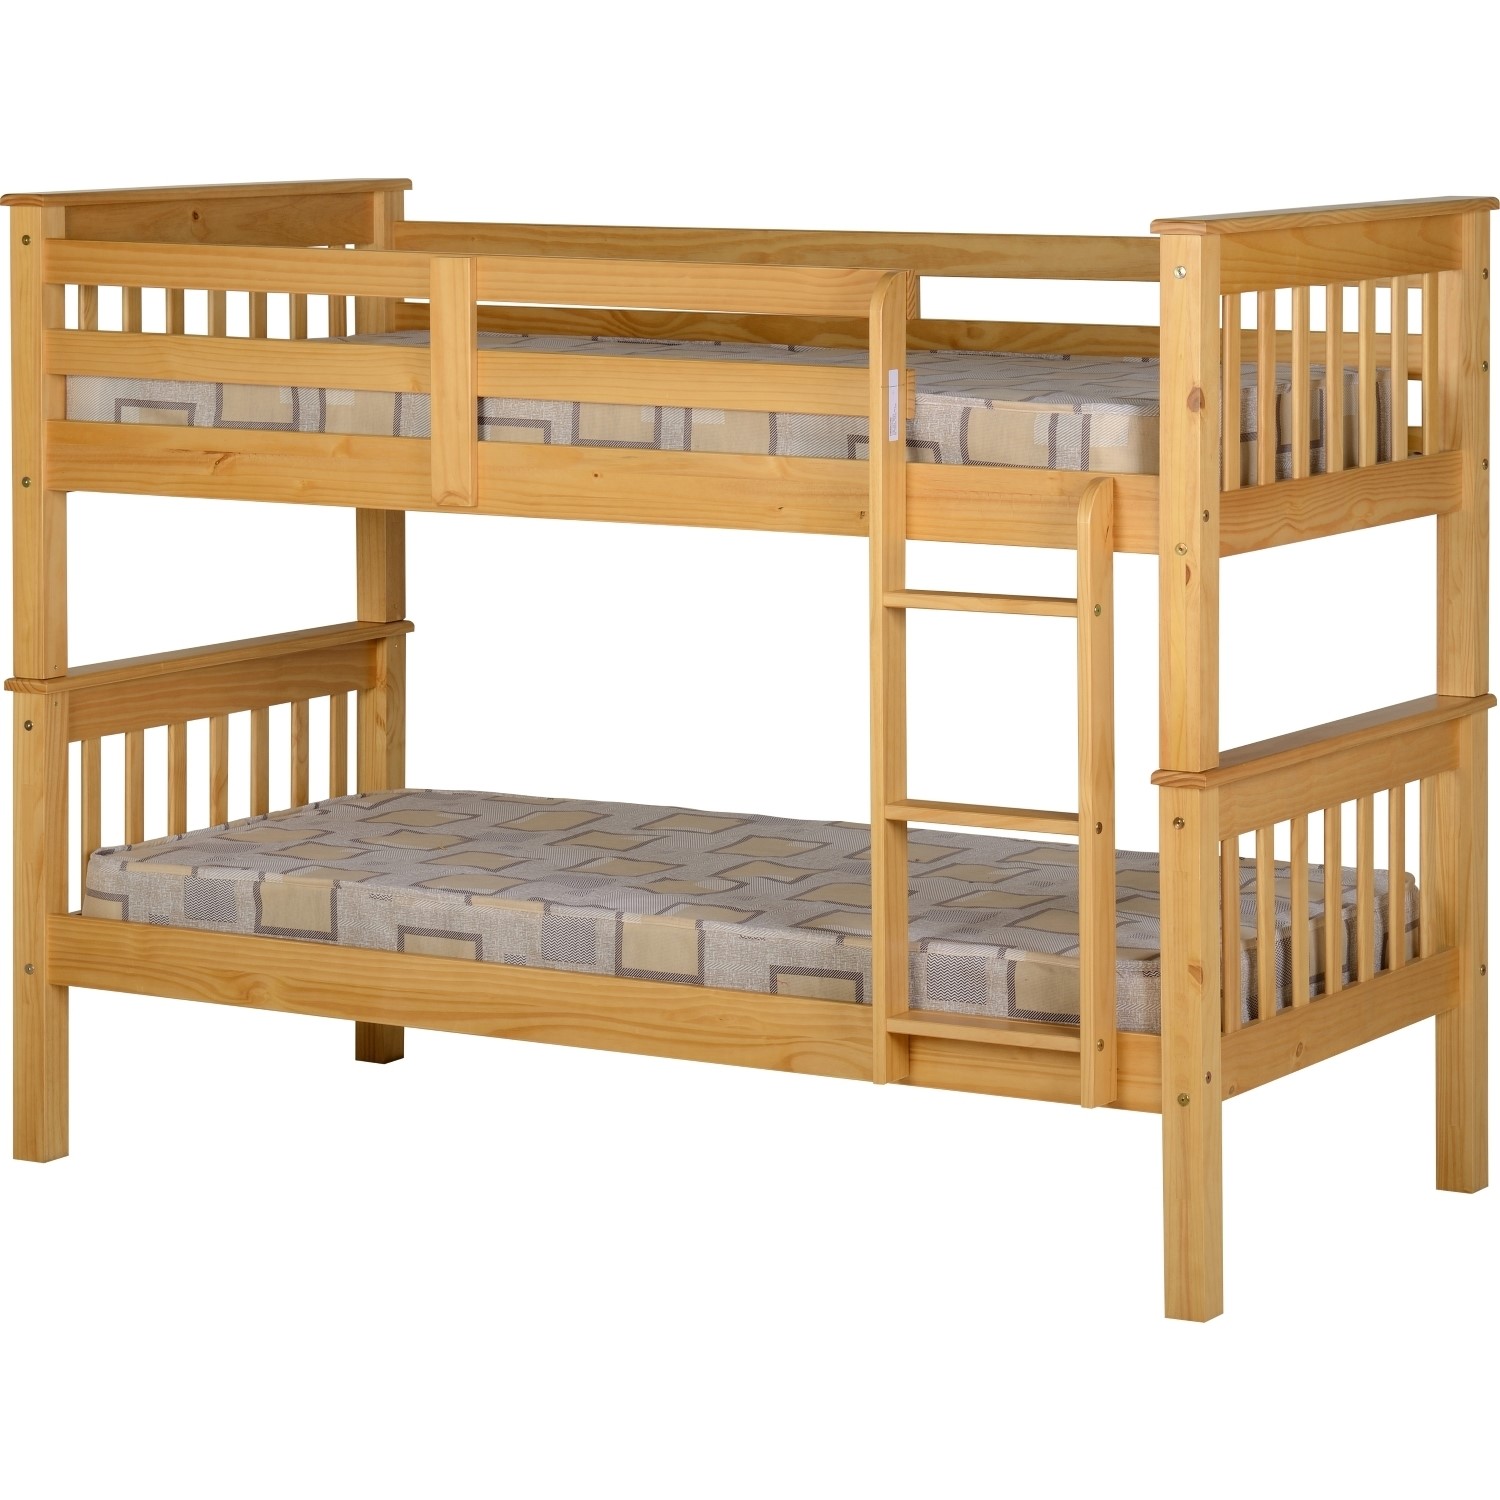 Photo of Pine detachable bunk bed - neptune - seconique